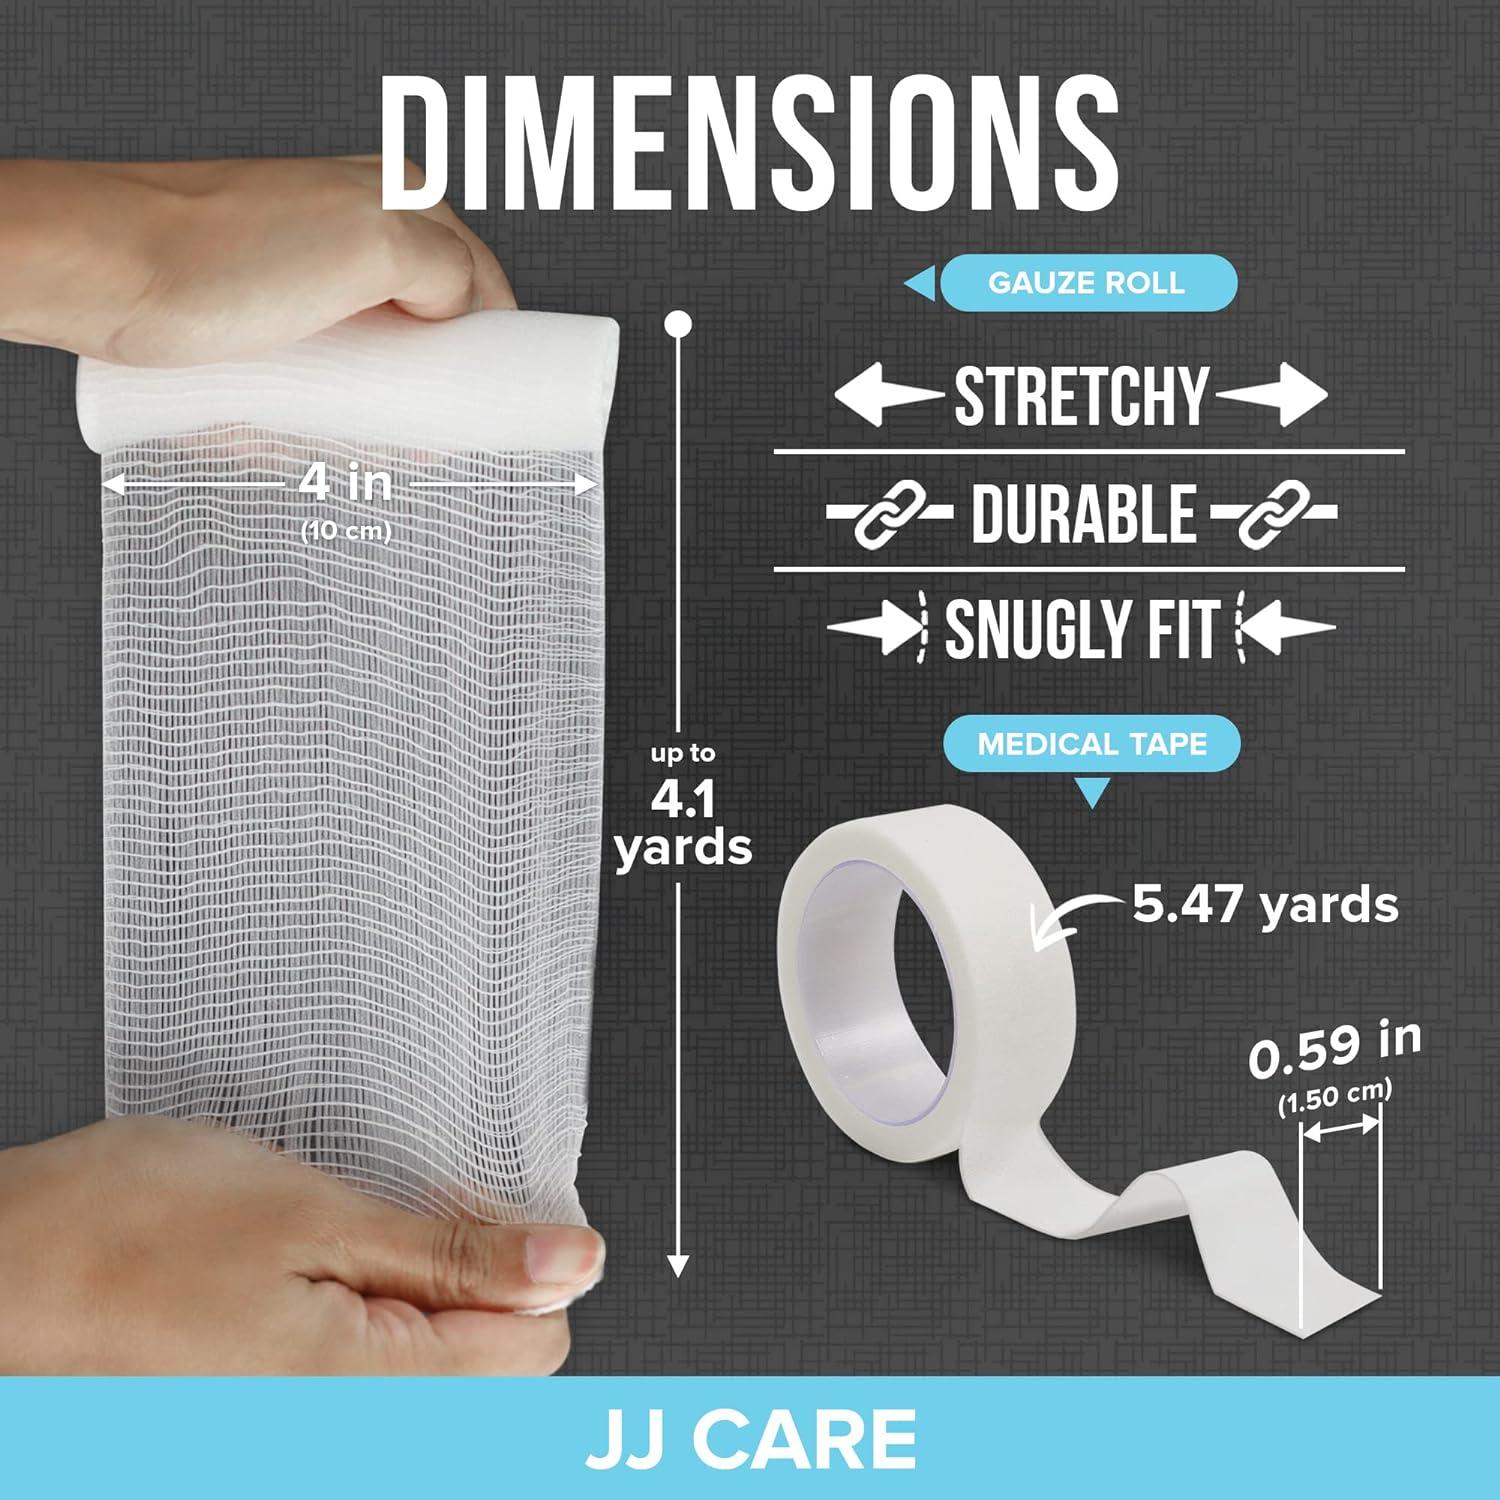 Premium Gauze Bandage Roll - 24 Pack - Gauze Roll (4 Inches x 4.1 Yards) - Gauze Wrap + Bonus Medical Tape